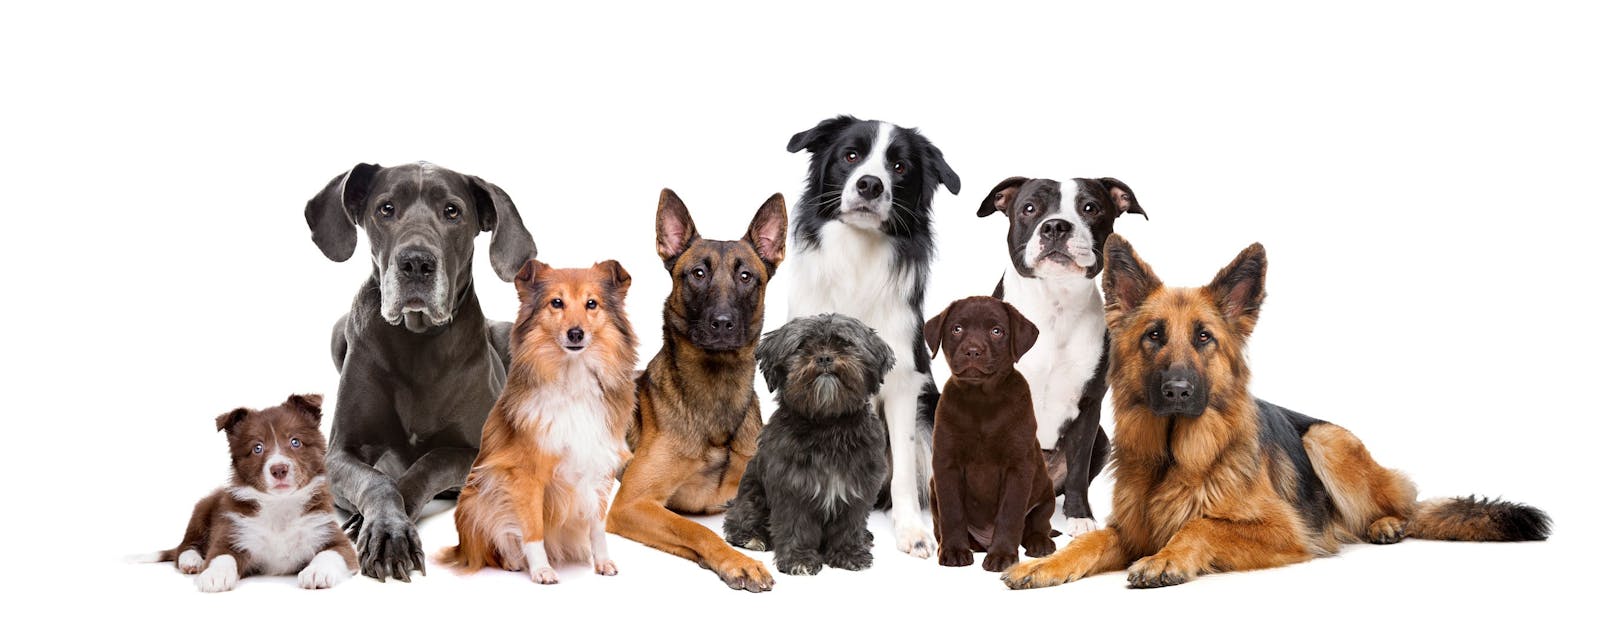 Wir suchen die beliebteste Hunderasse der HEUTE-Leser. Mach doch mit und stimme ab! 